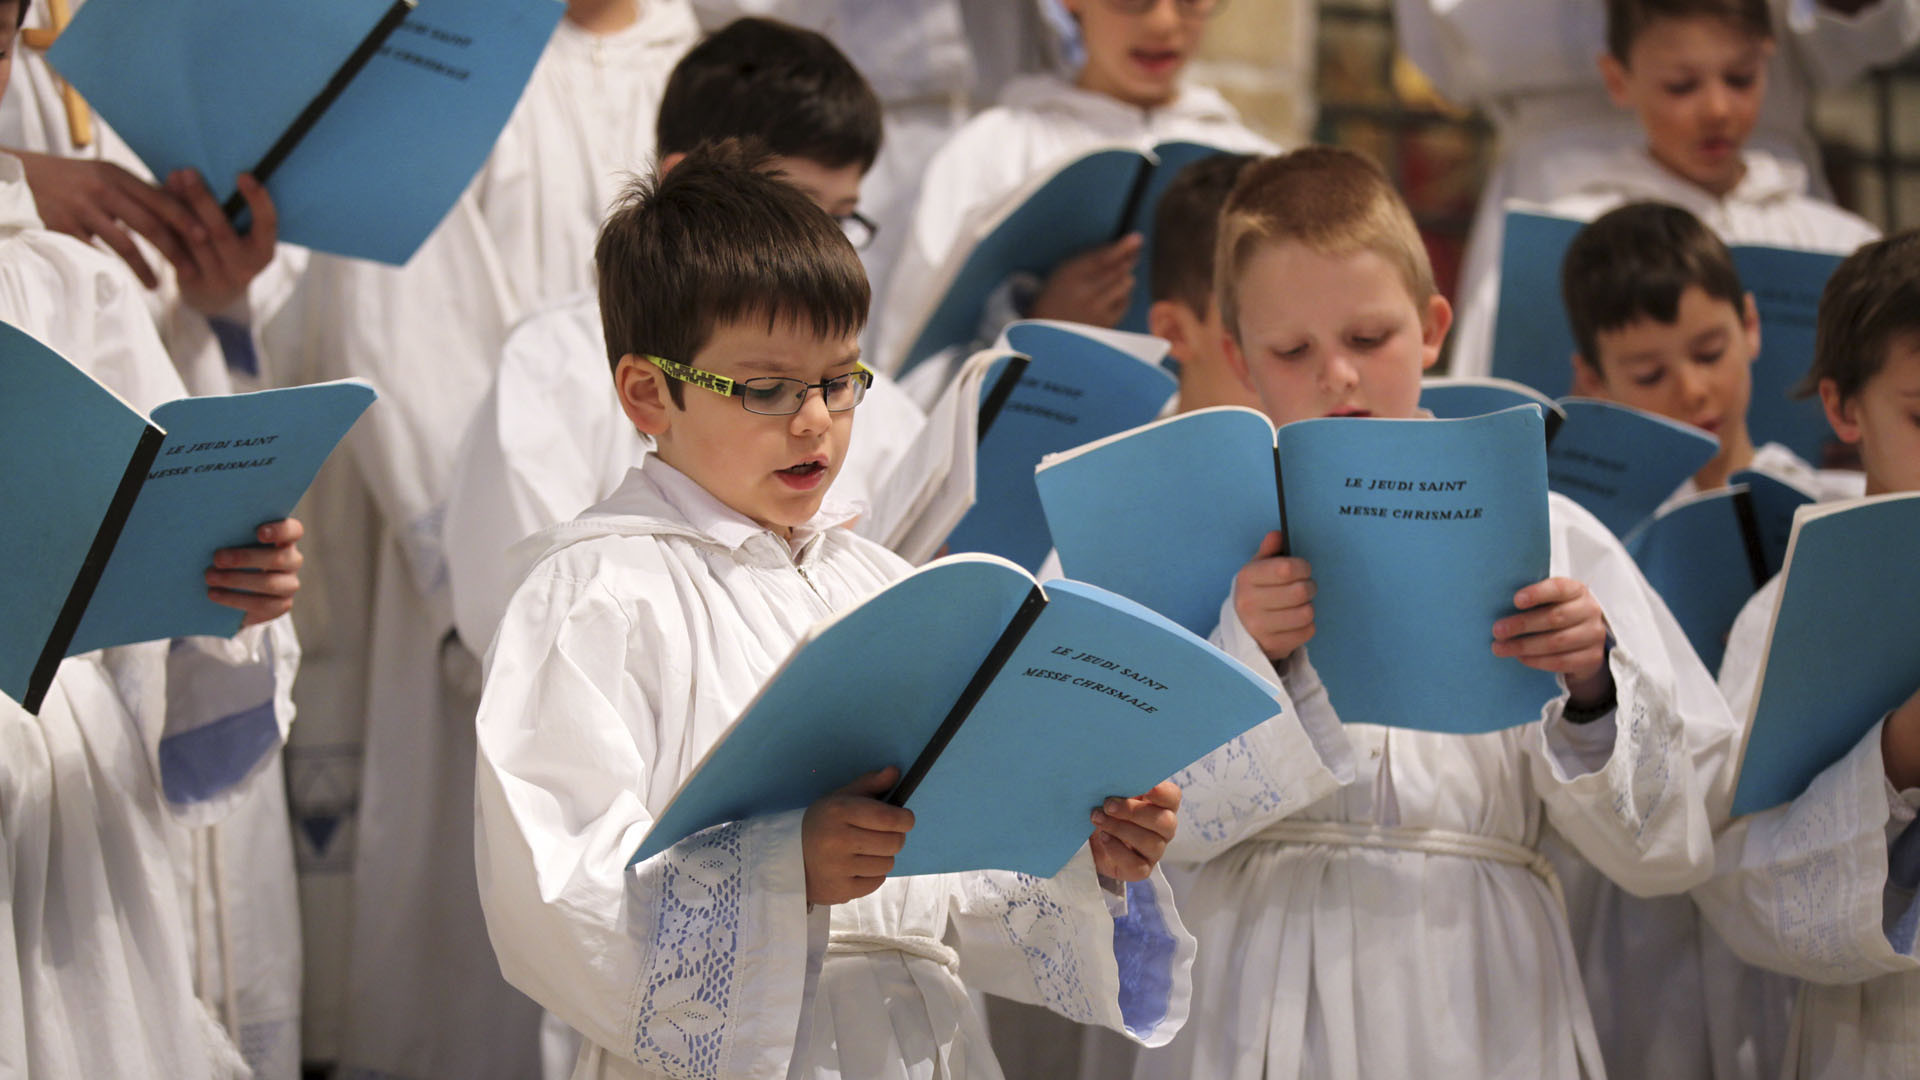 La cathédrale de Sion offre de nombreuses possibilités musicales pour les enfants, comme la Schola des petits chanteurs | © Bernard Hallet